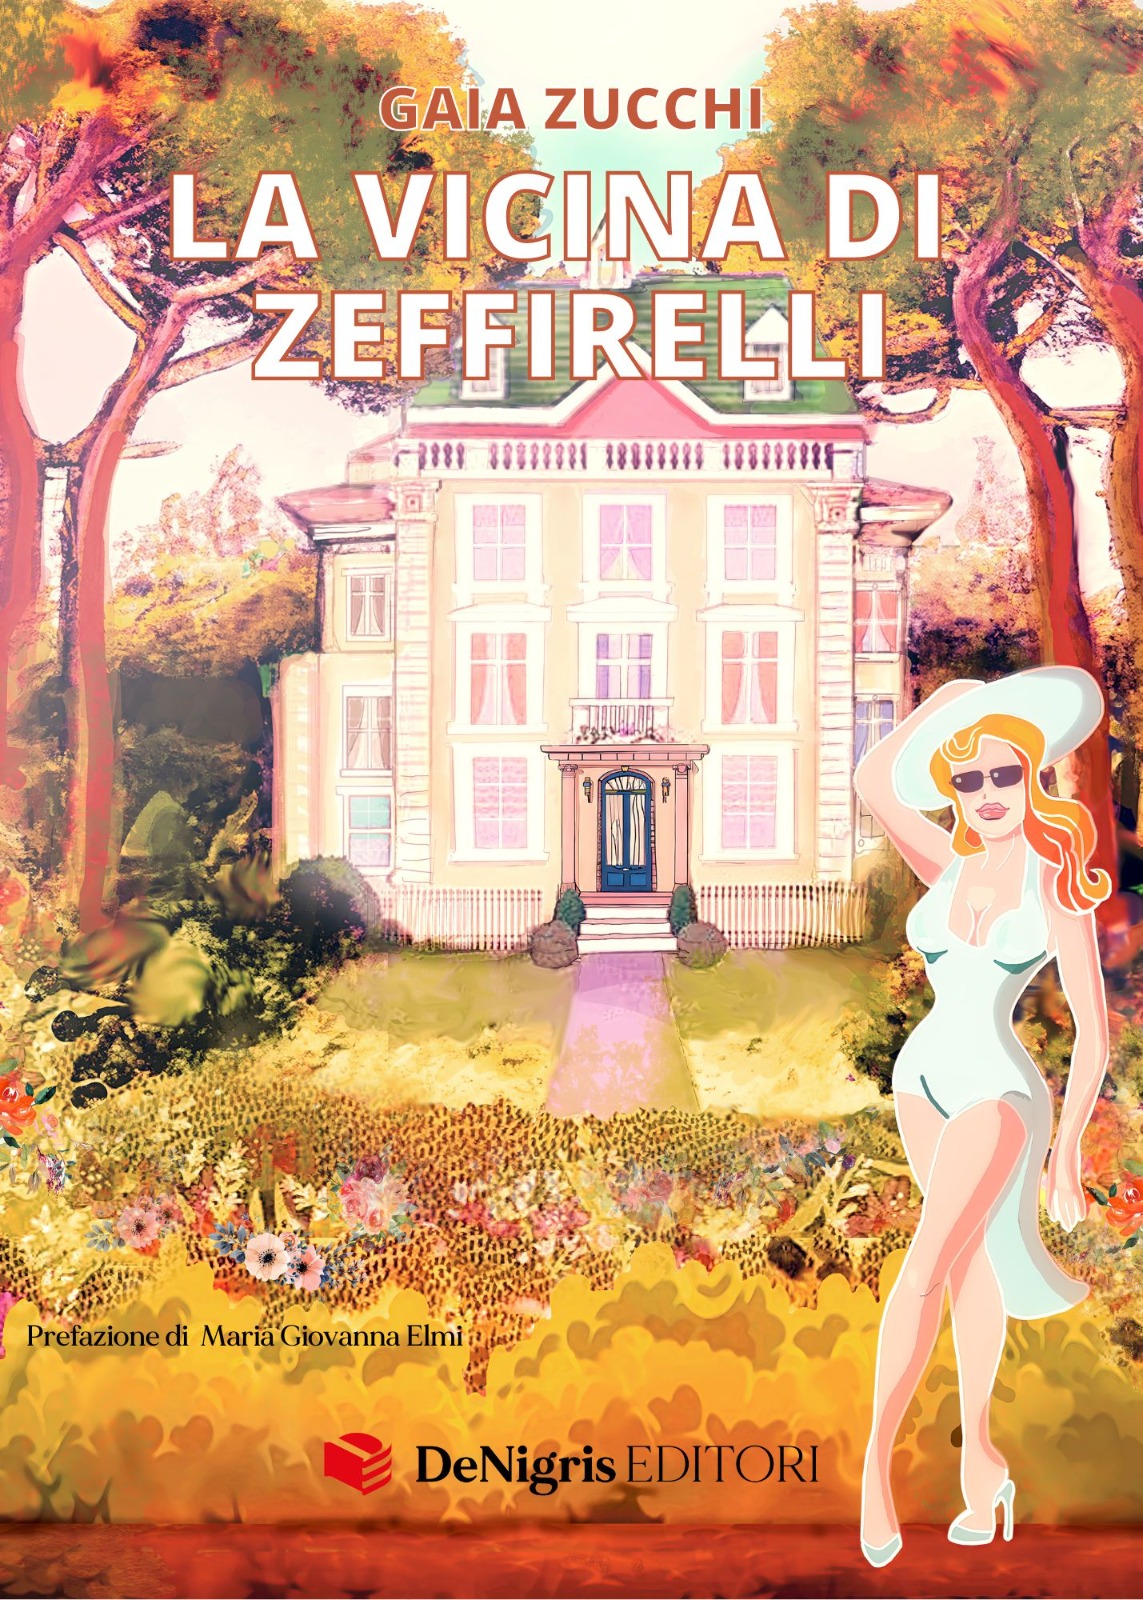 L’attrice Gaia Zucchi presenta il libro “La vicina di Zeffirelli”